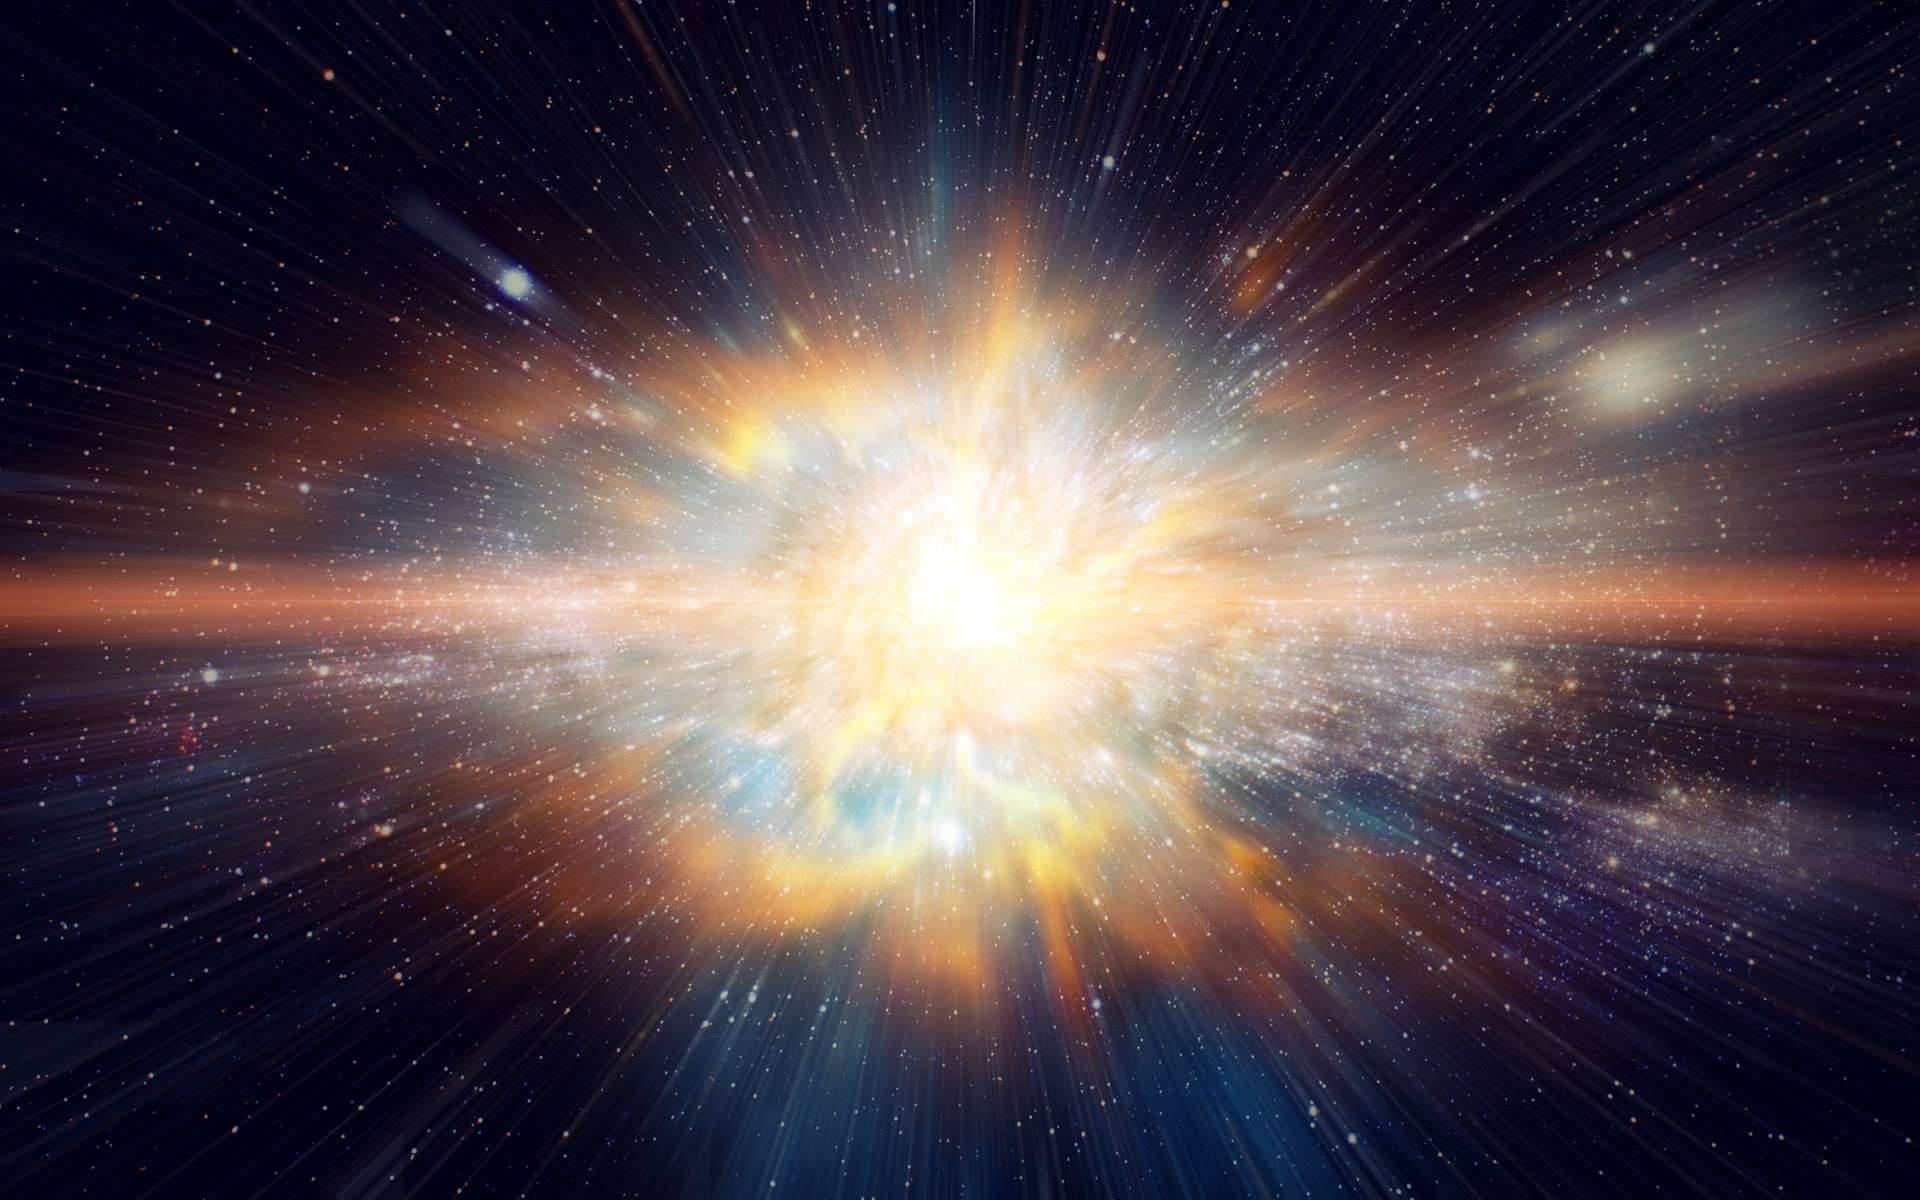 Lorsque une étoile massive arrive en fin de vie, elle explose en libérant ses couches supérieures à grande vitesse : c'est le phénomène de supernova. © Quality Stock Arts, Adobe Stock